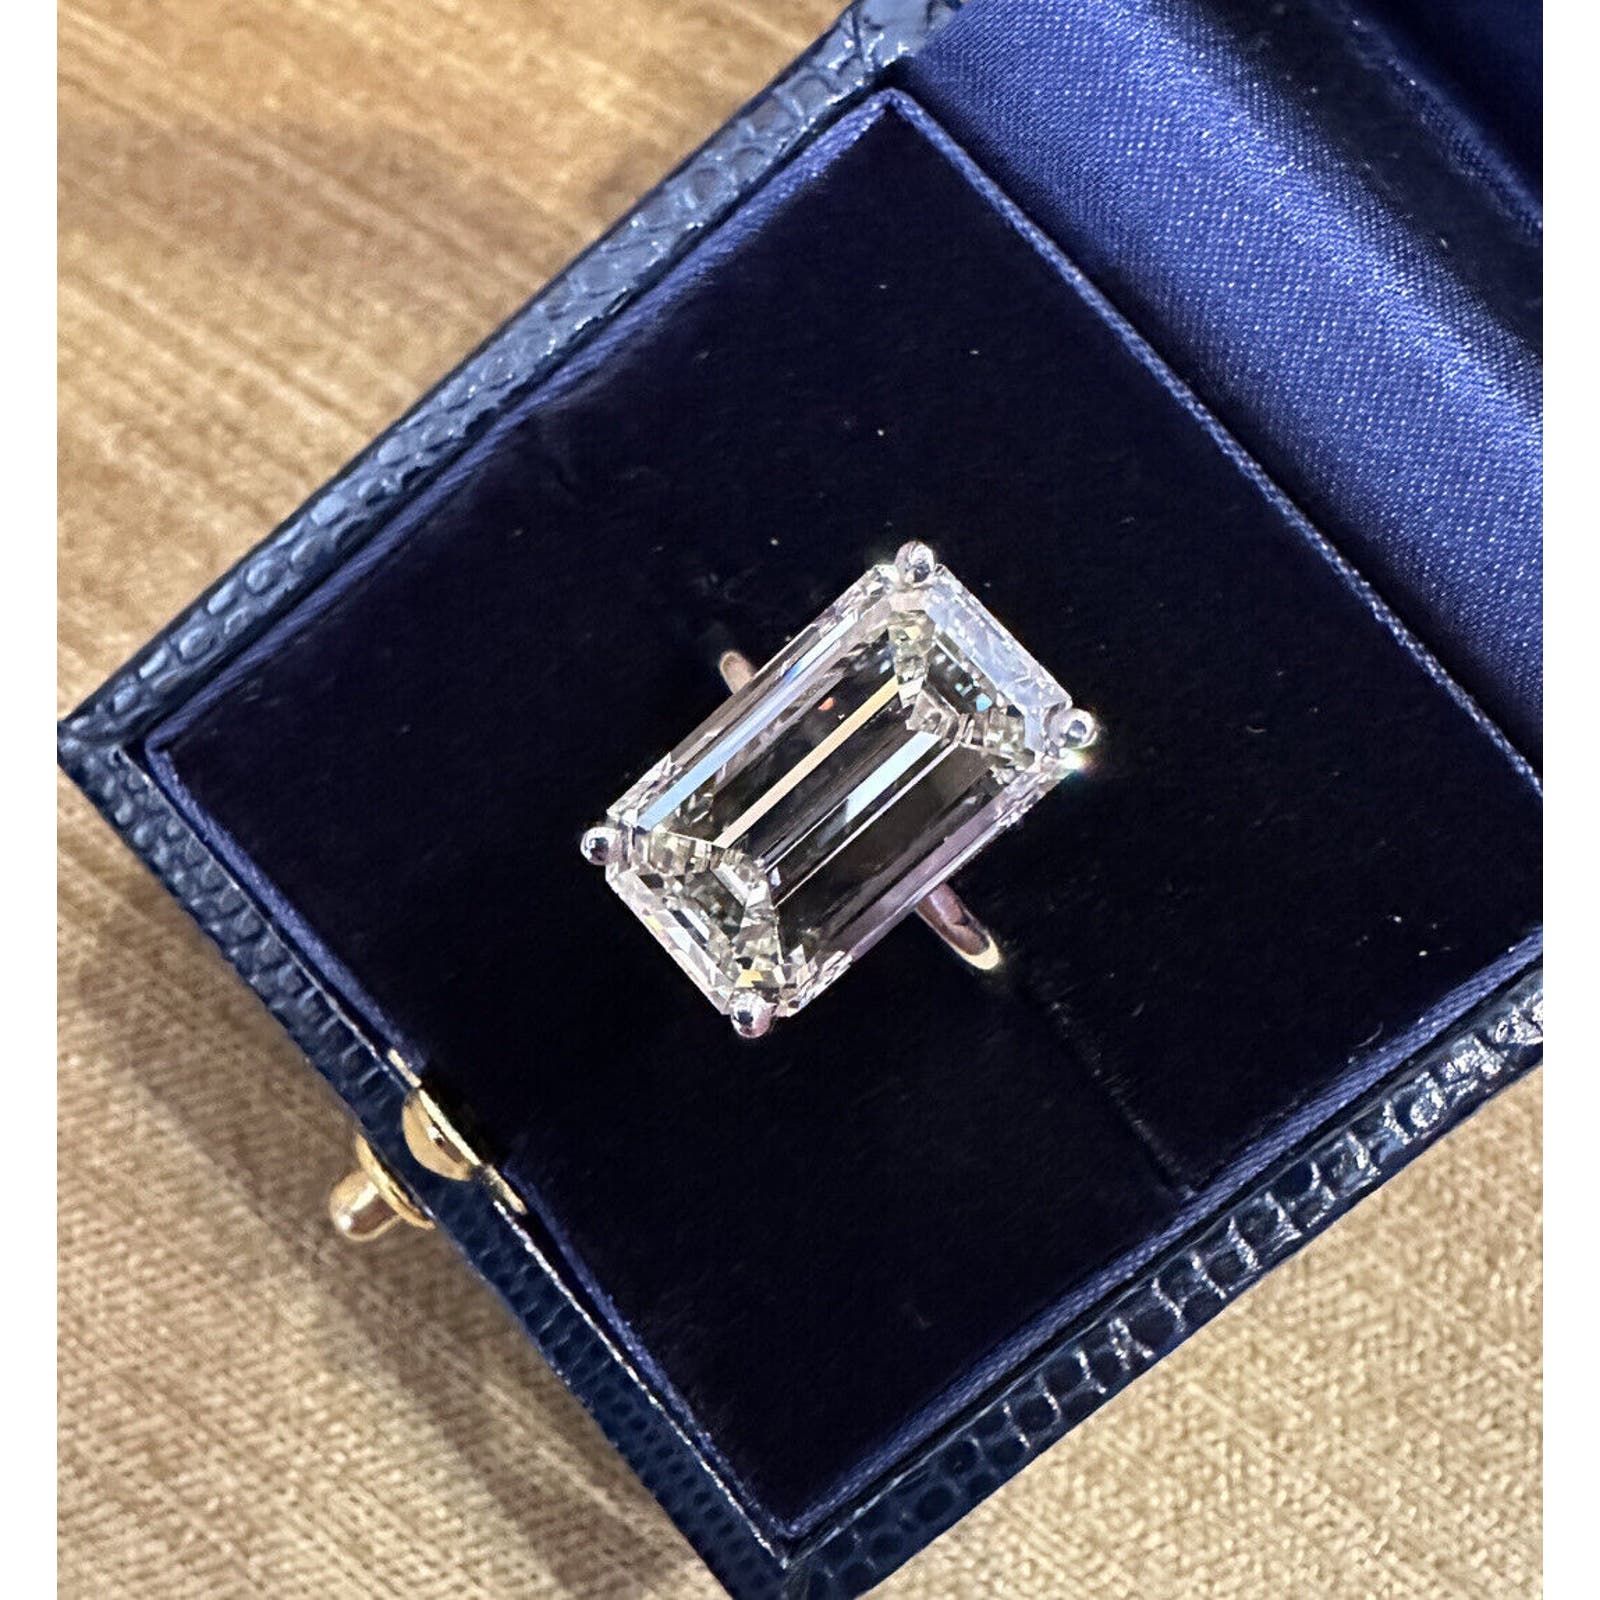 GIA 10.08 ct. Emerald Cut Diamond Ring in Platinum - C300